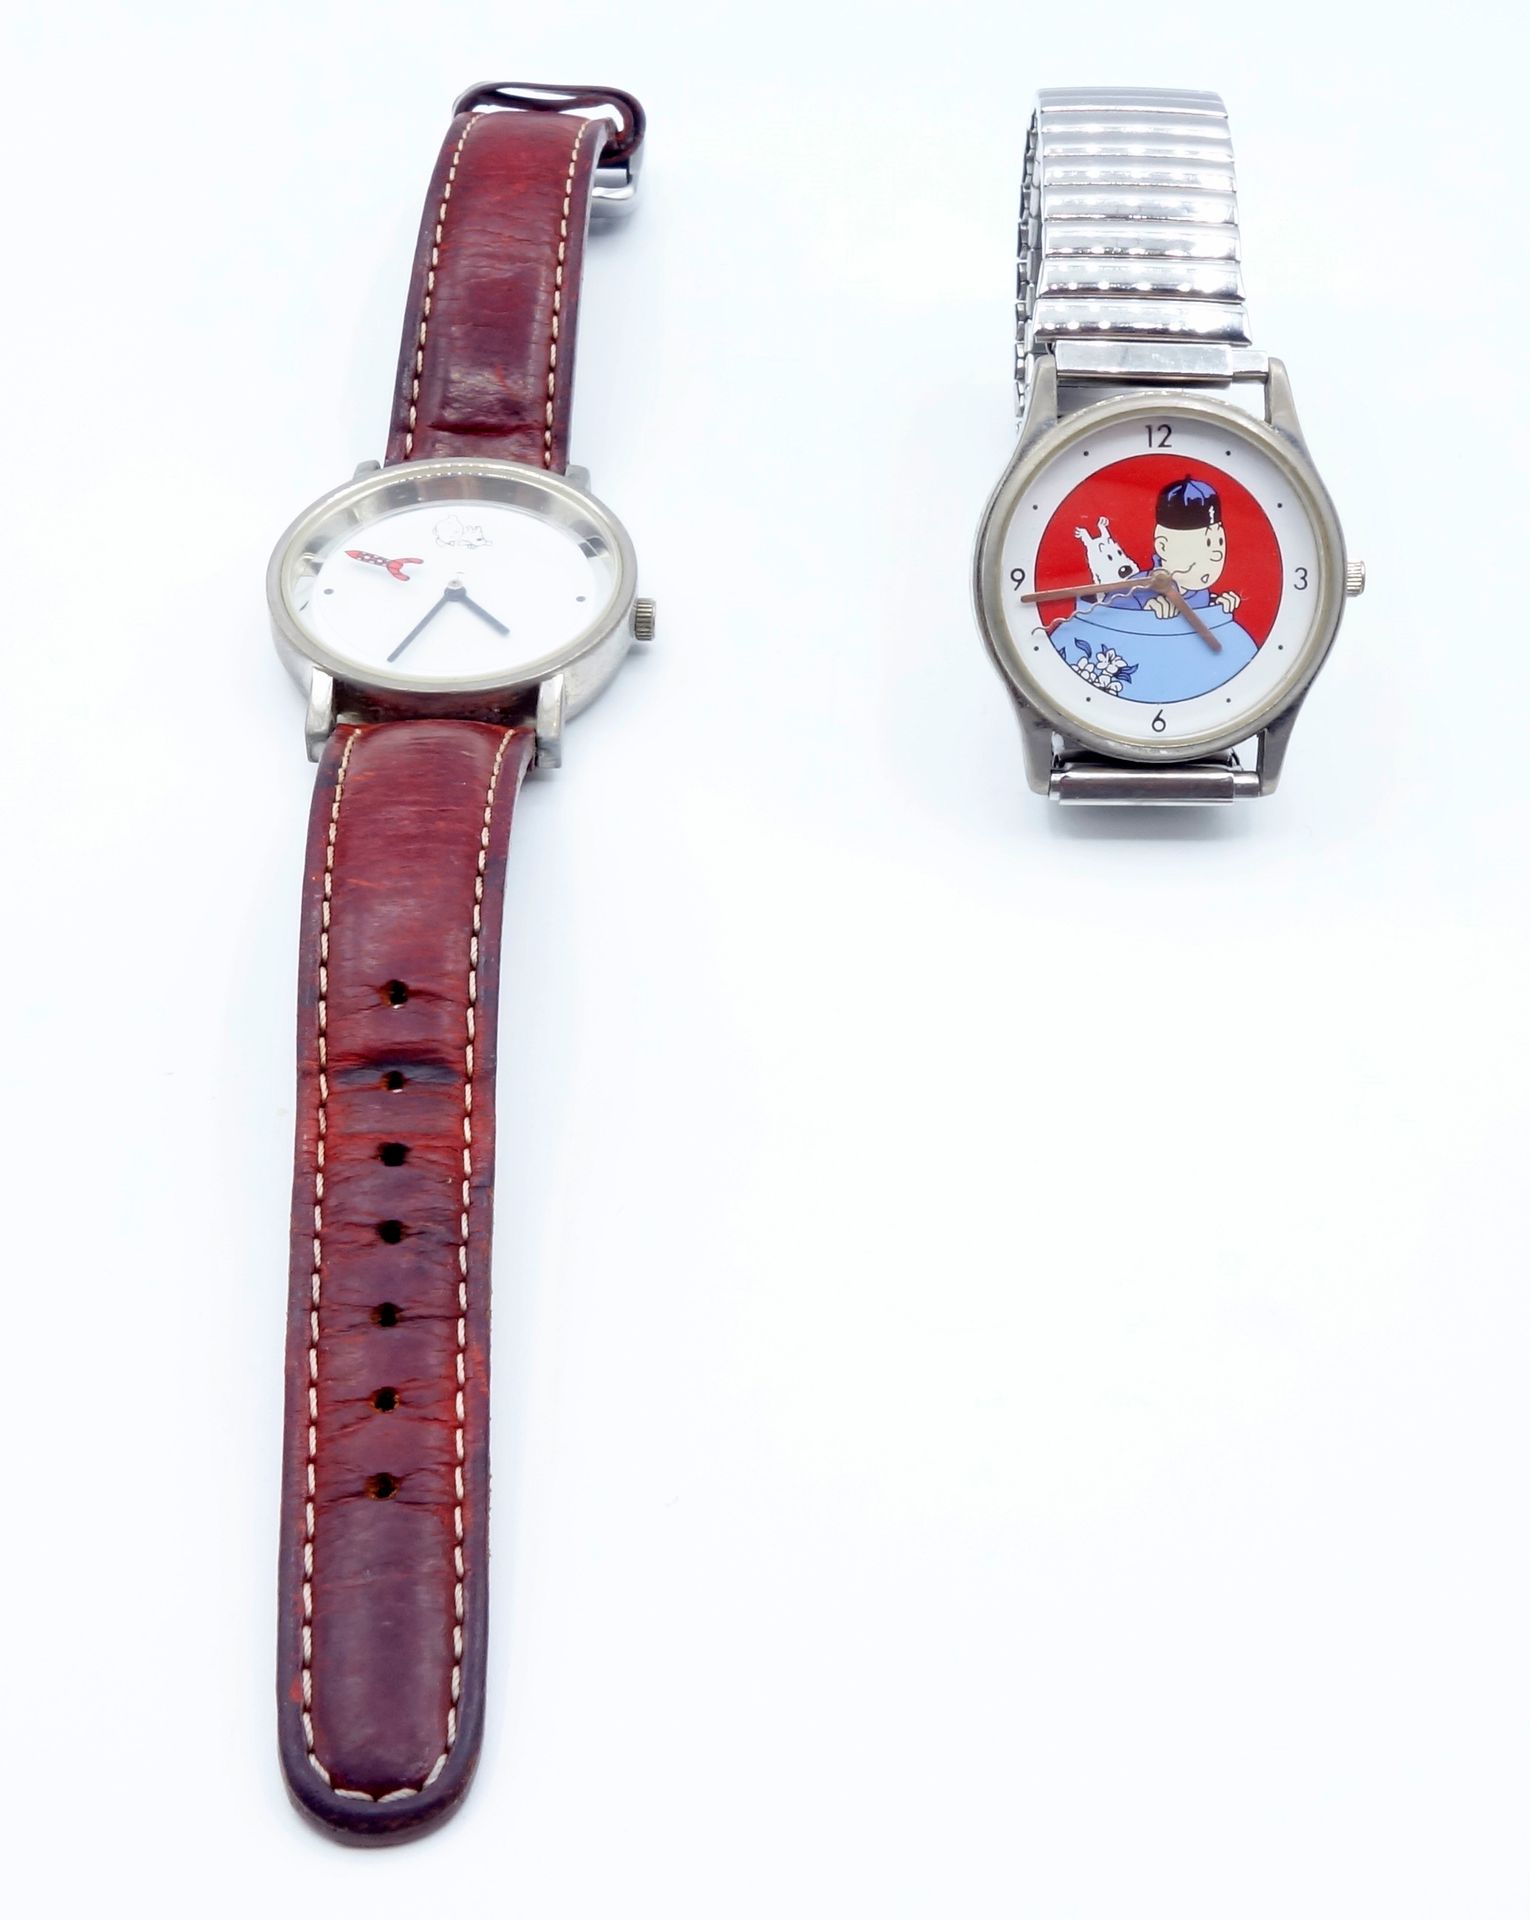 DIVERS 
Ensemble de 3 montres, 2 Tintin (Citime) et 1 Le Chat. Très bon état.